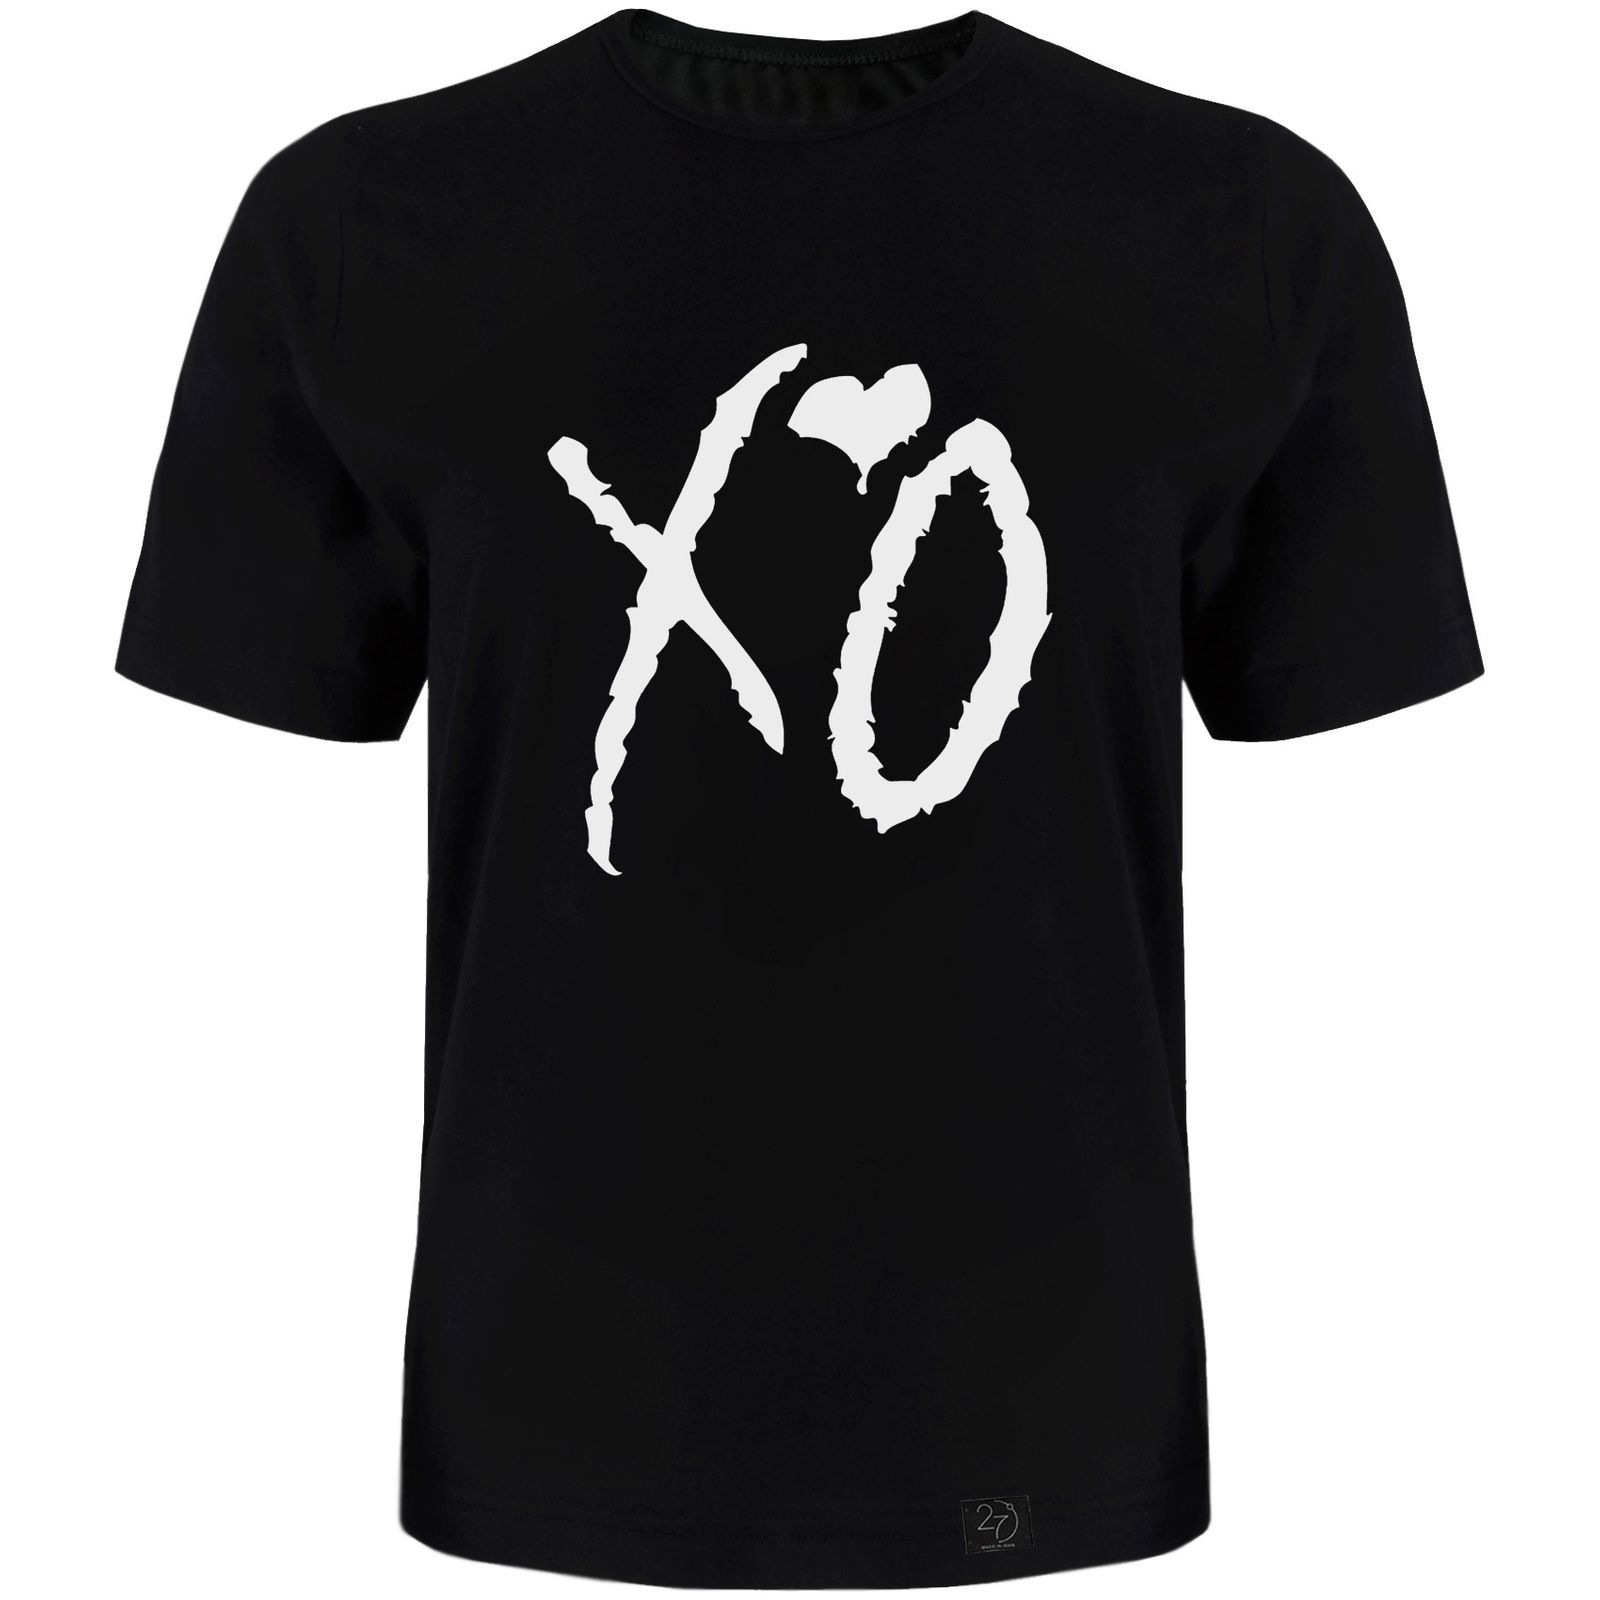  تی شرت آستین کوتاه مردانه 27 طرح XO کد TR08 رنگ مشکی -  - 1